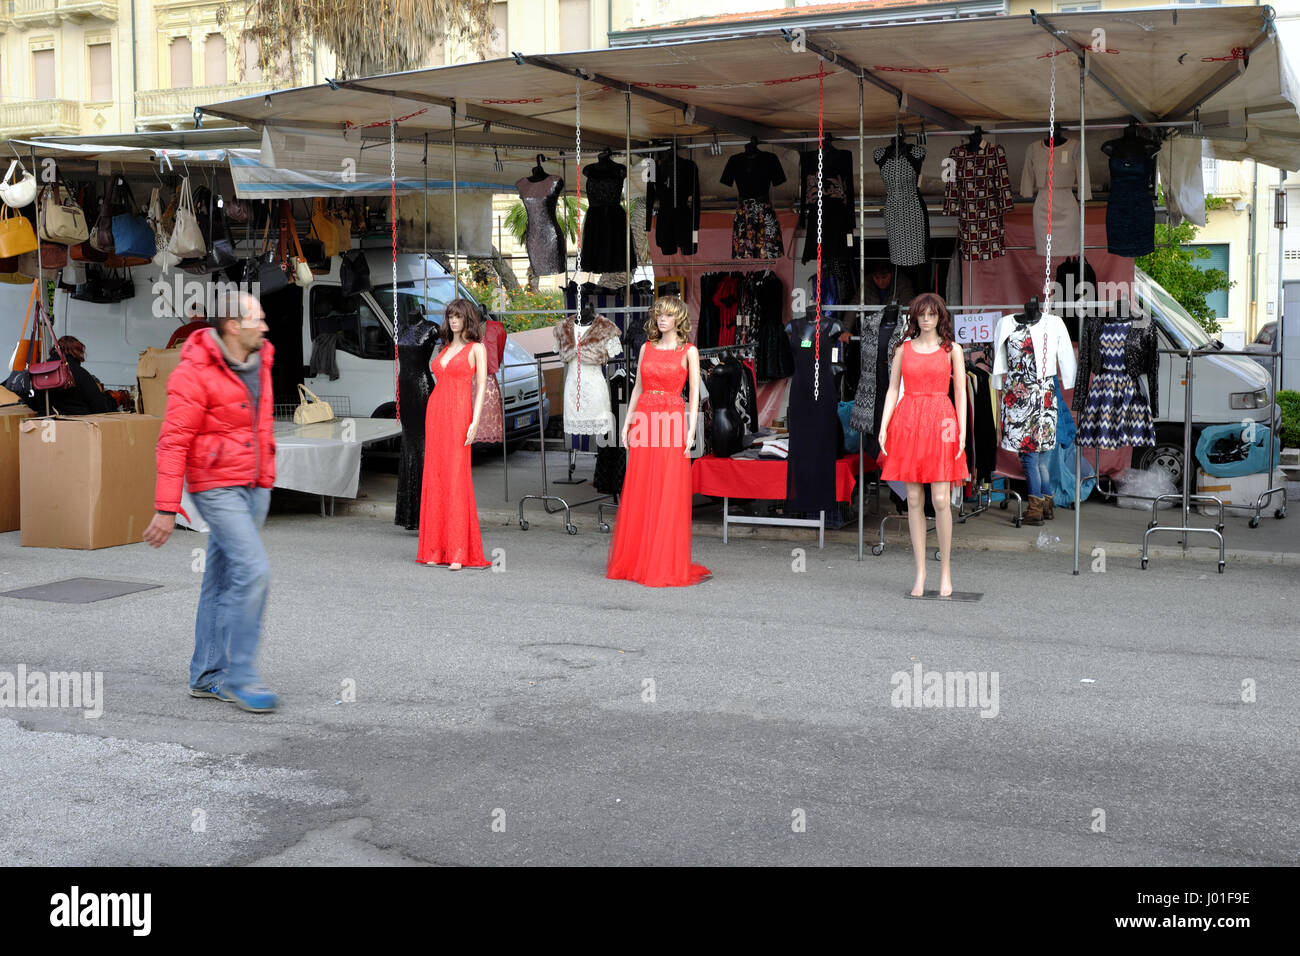 Drei Mannequins in rotem Kleid und Mann in rot Daunenjacke vorbei - Viareggio Straße Markt, Toskana, Italien, Europa Stockfoto